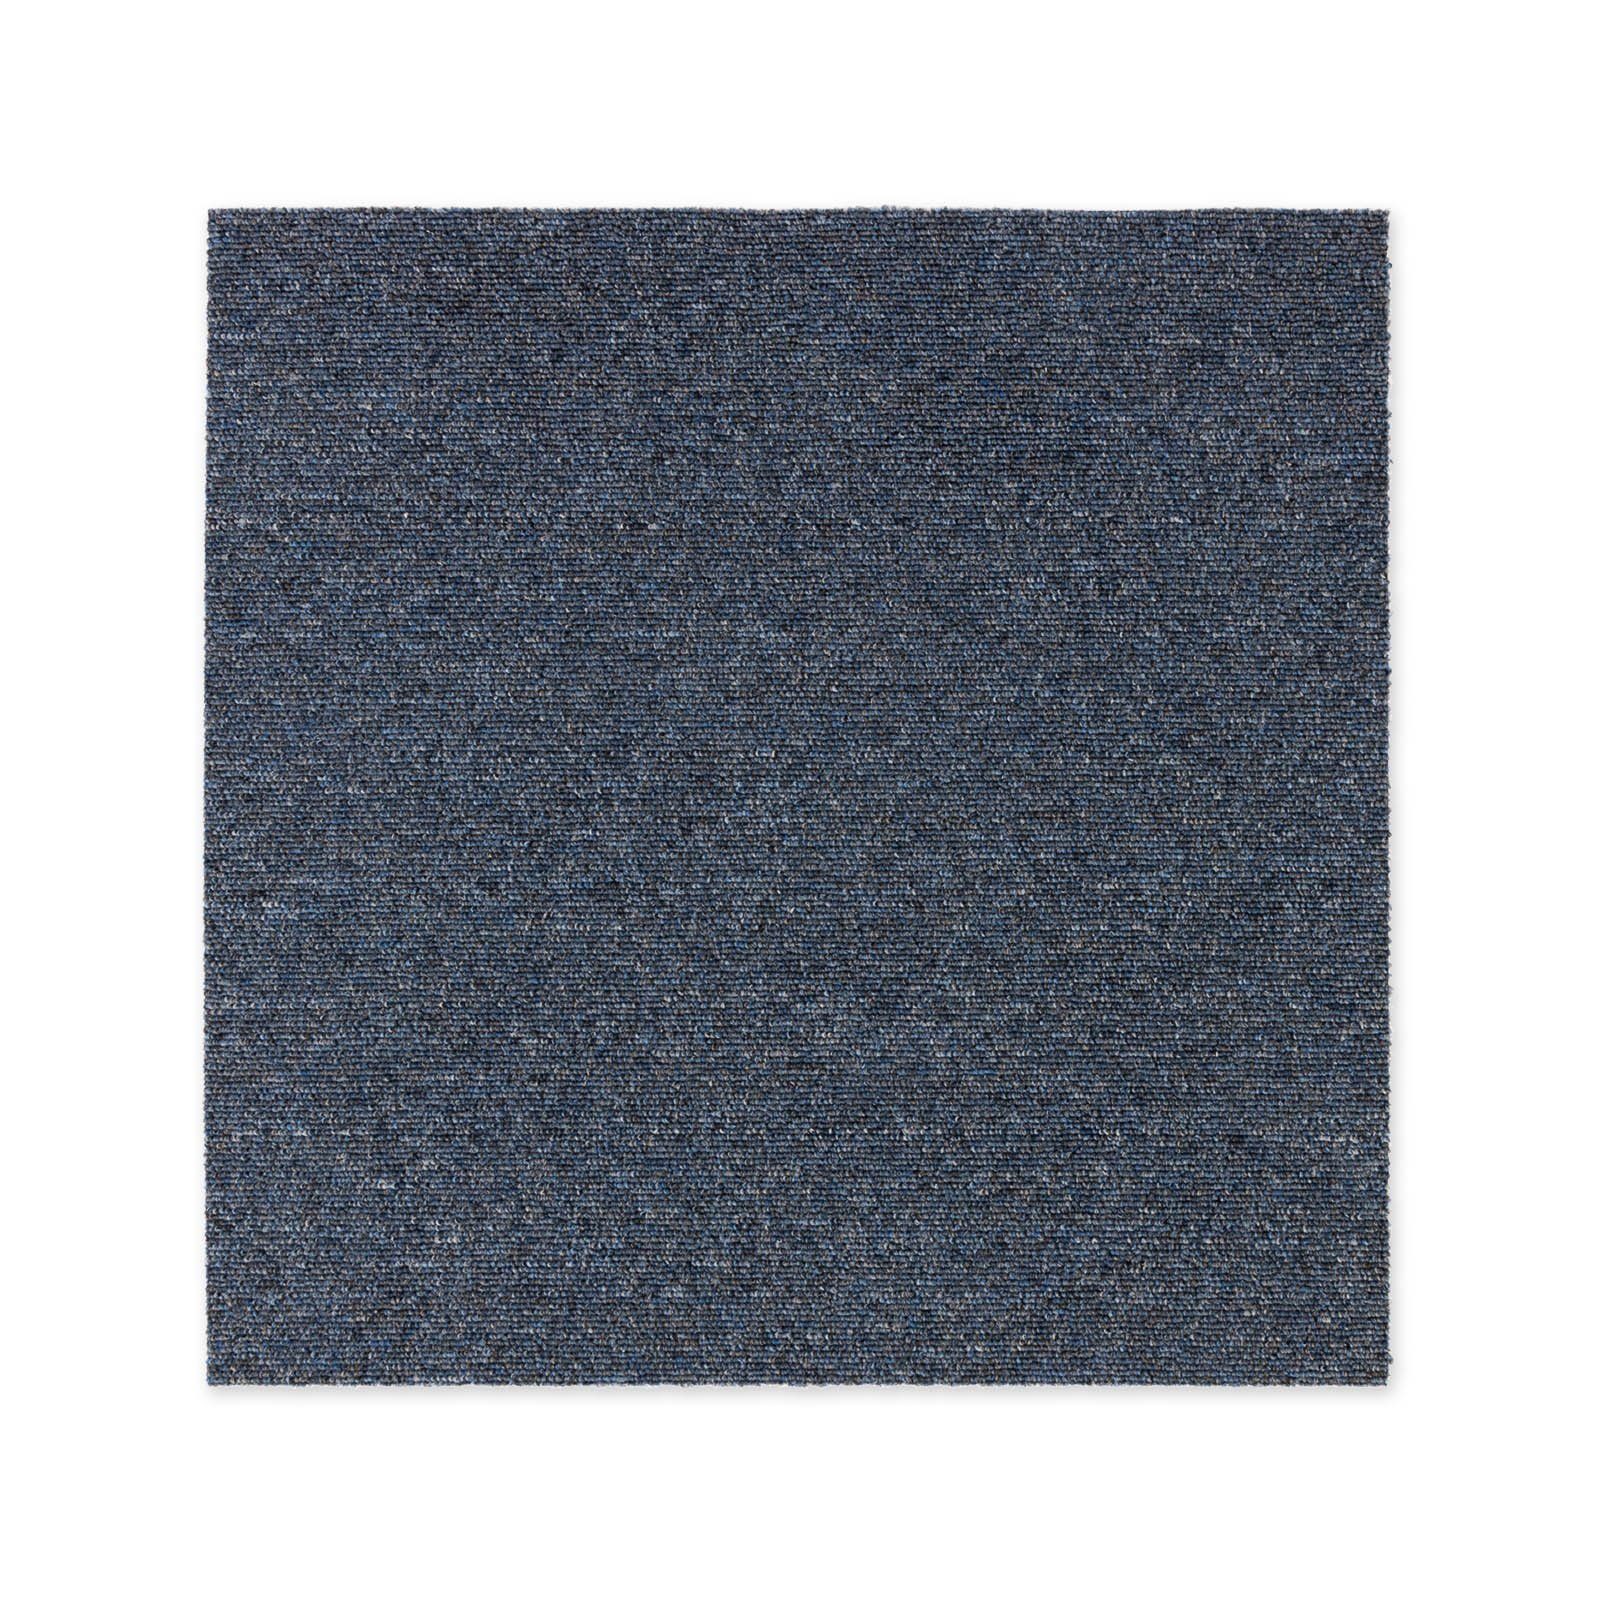 Teppichfliese Moscow, Bodenschutz, Erhältlich in 4 Farben, 50 x 50 cm, Karat, Quadratisch, Höhe: 5.5 mm, Selbstliegend